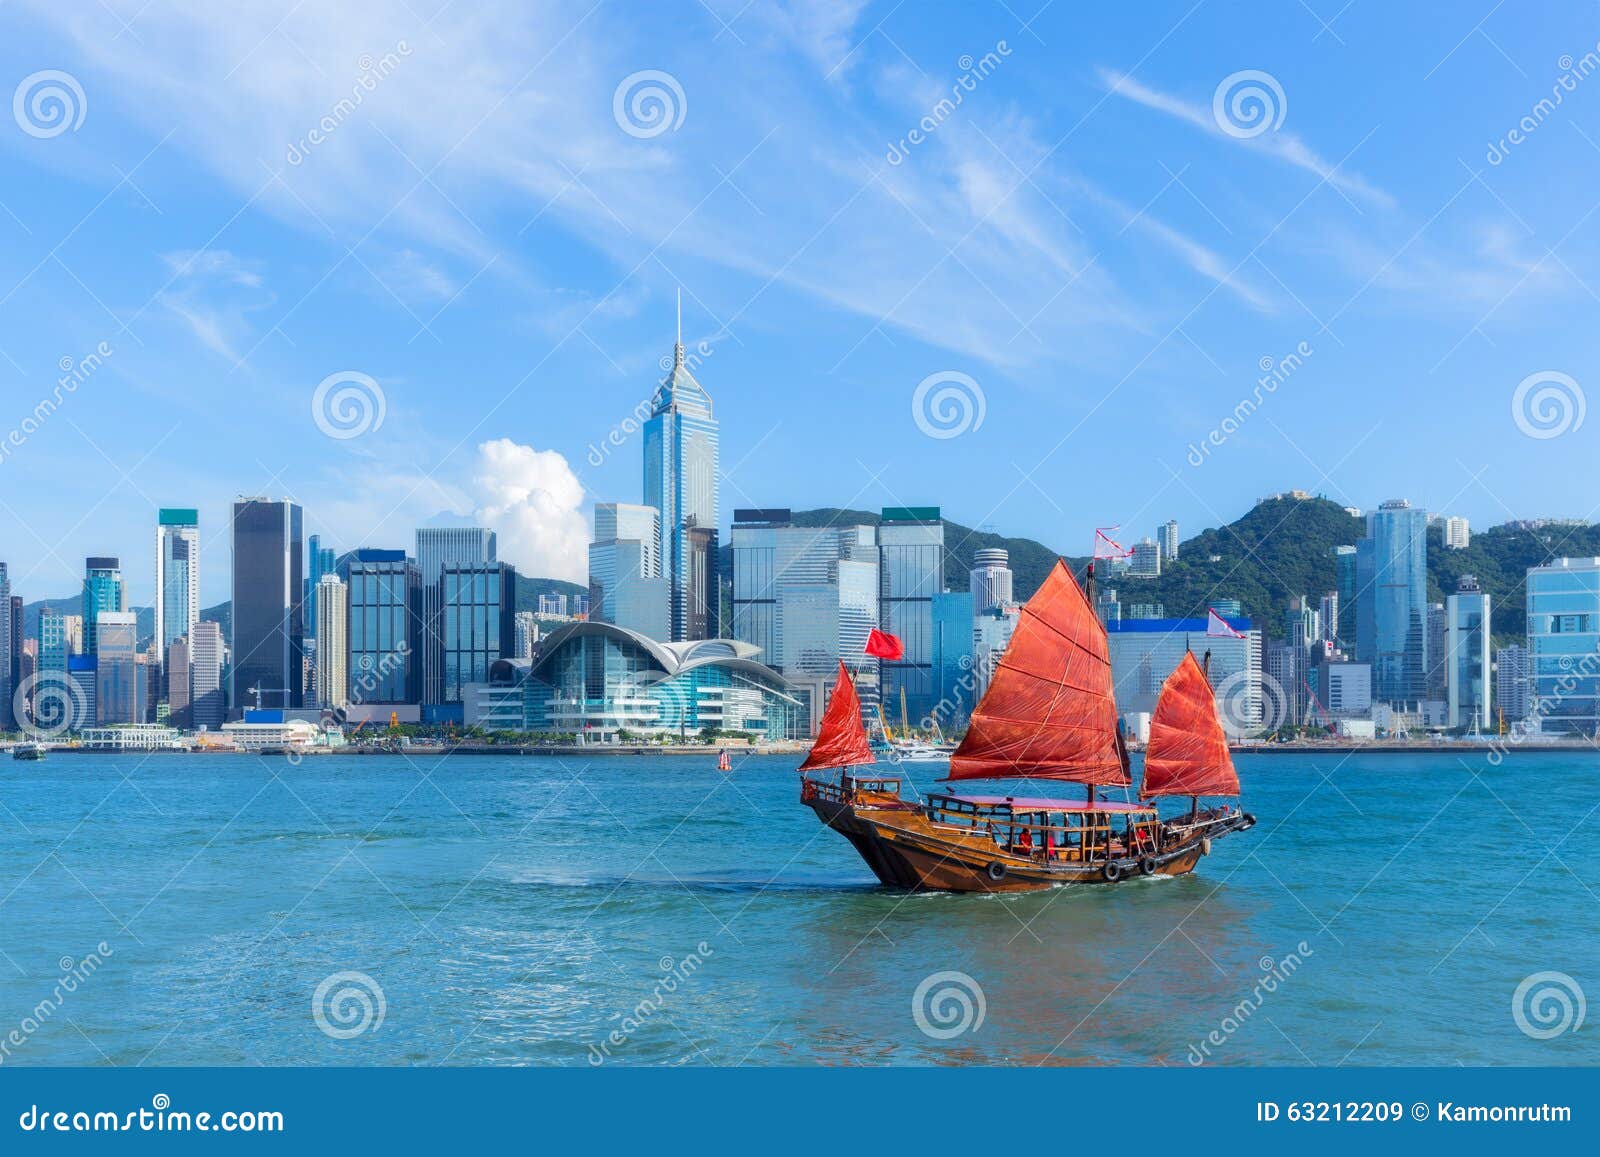 Hong Kong-Hafen Mit Kramboot Stockbild - Bild von grenzstein